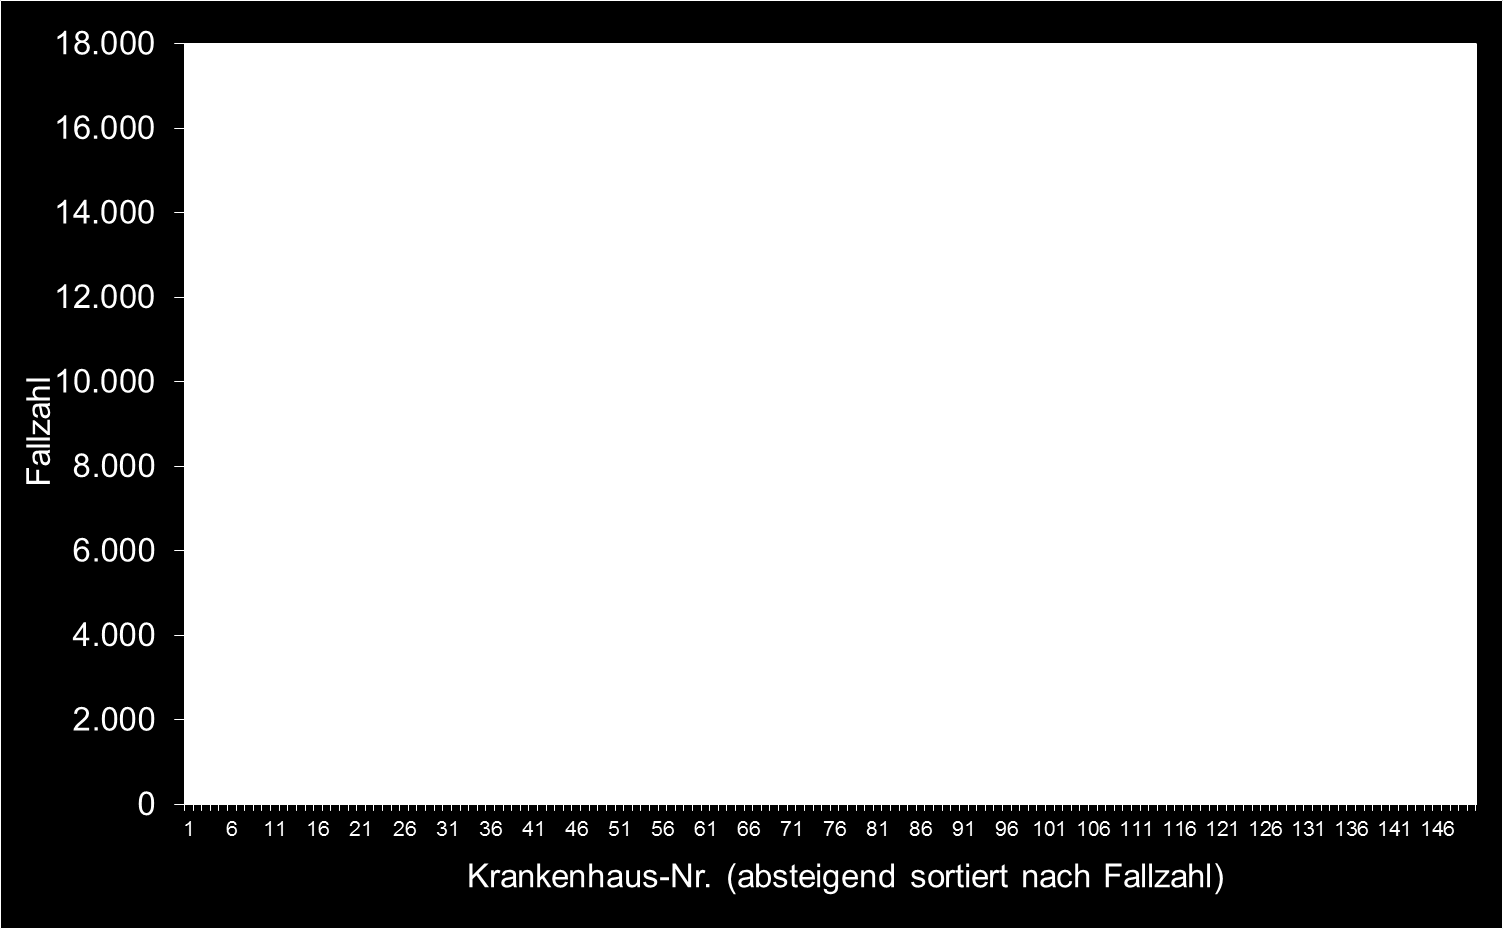 A-1 Grafische Darstellung der fallzahlstärksten Krankenhäuser in Grundgesamtheit (Daten gem.